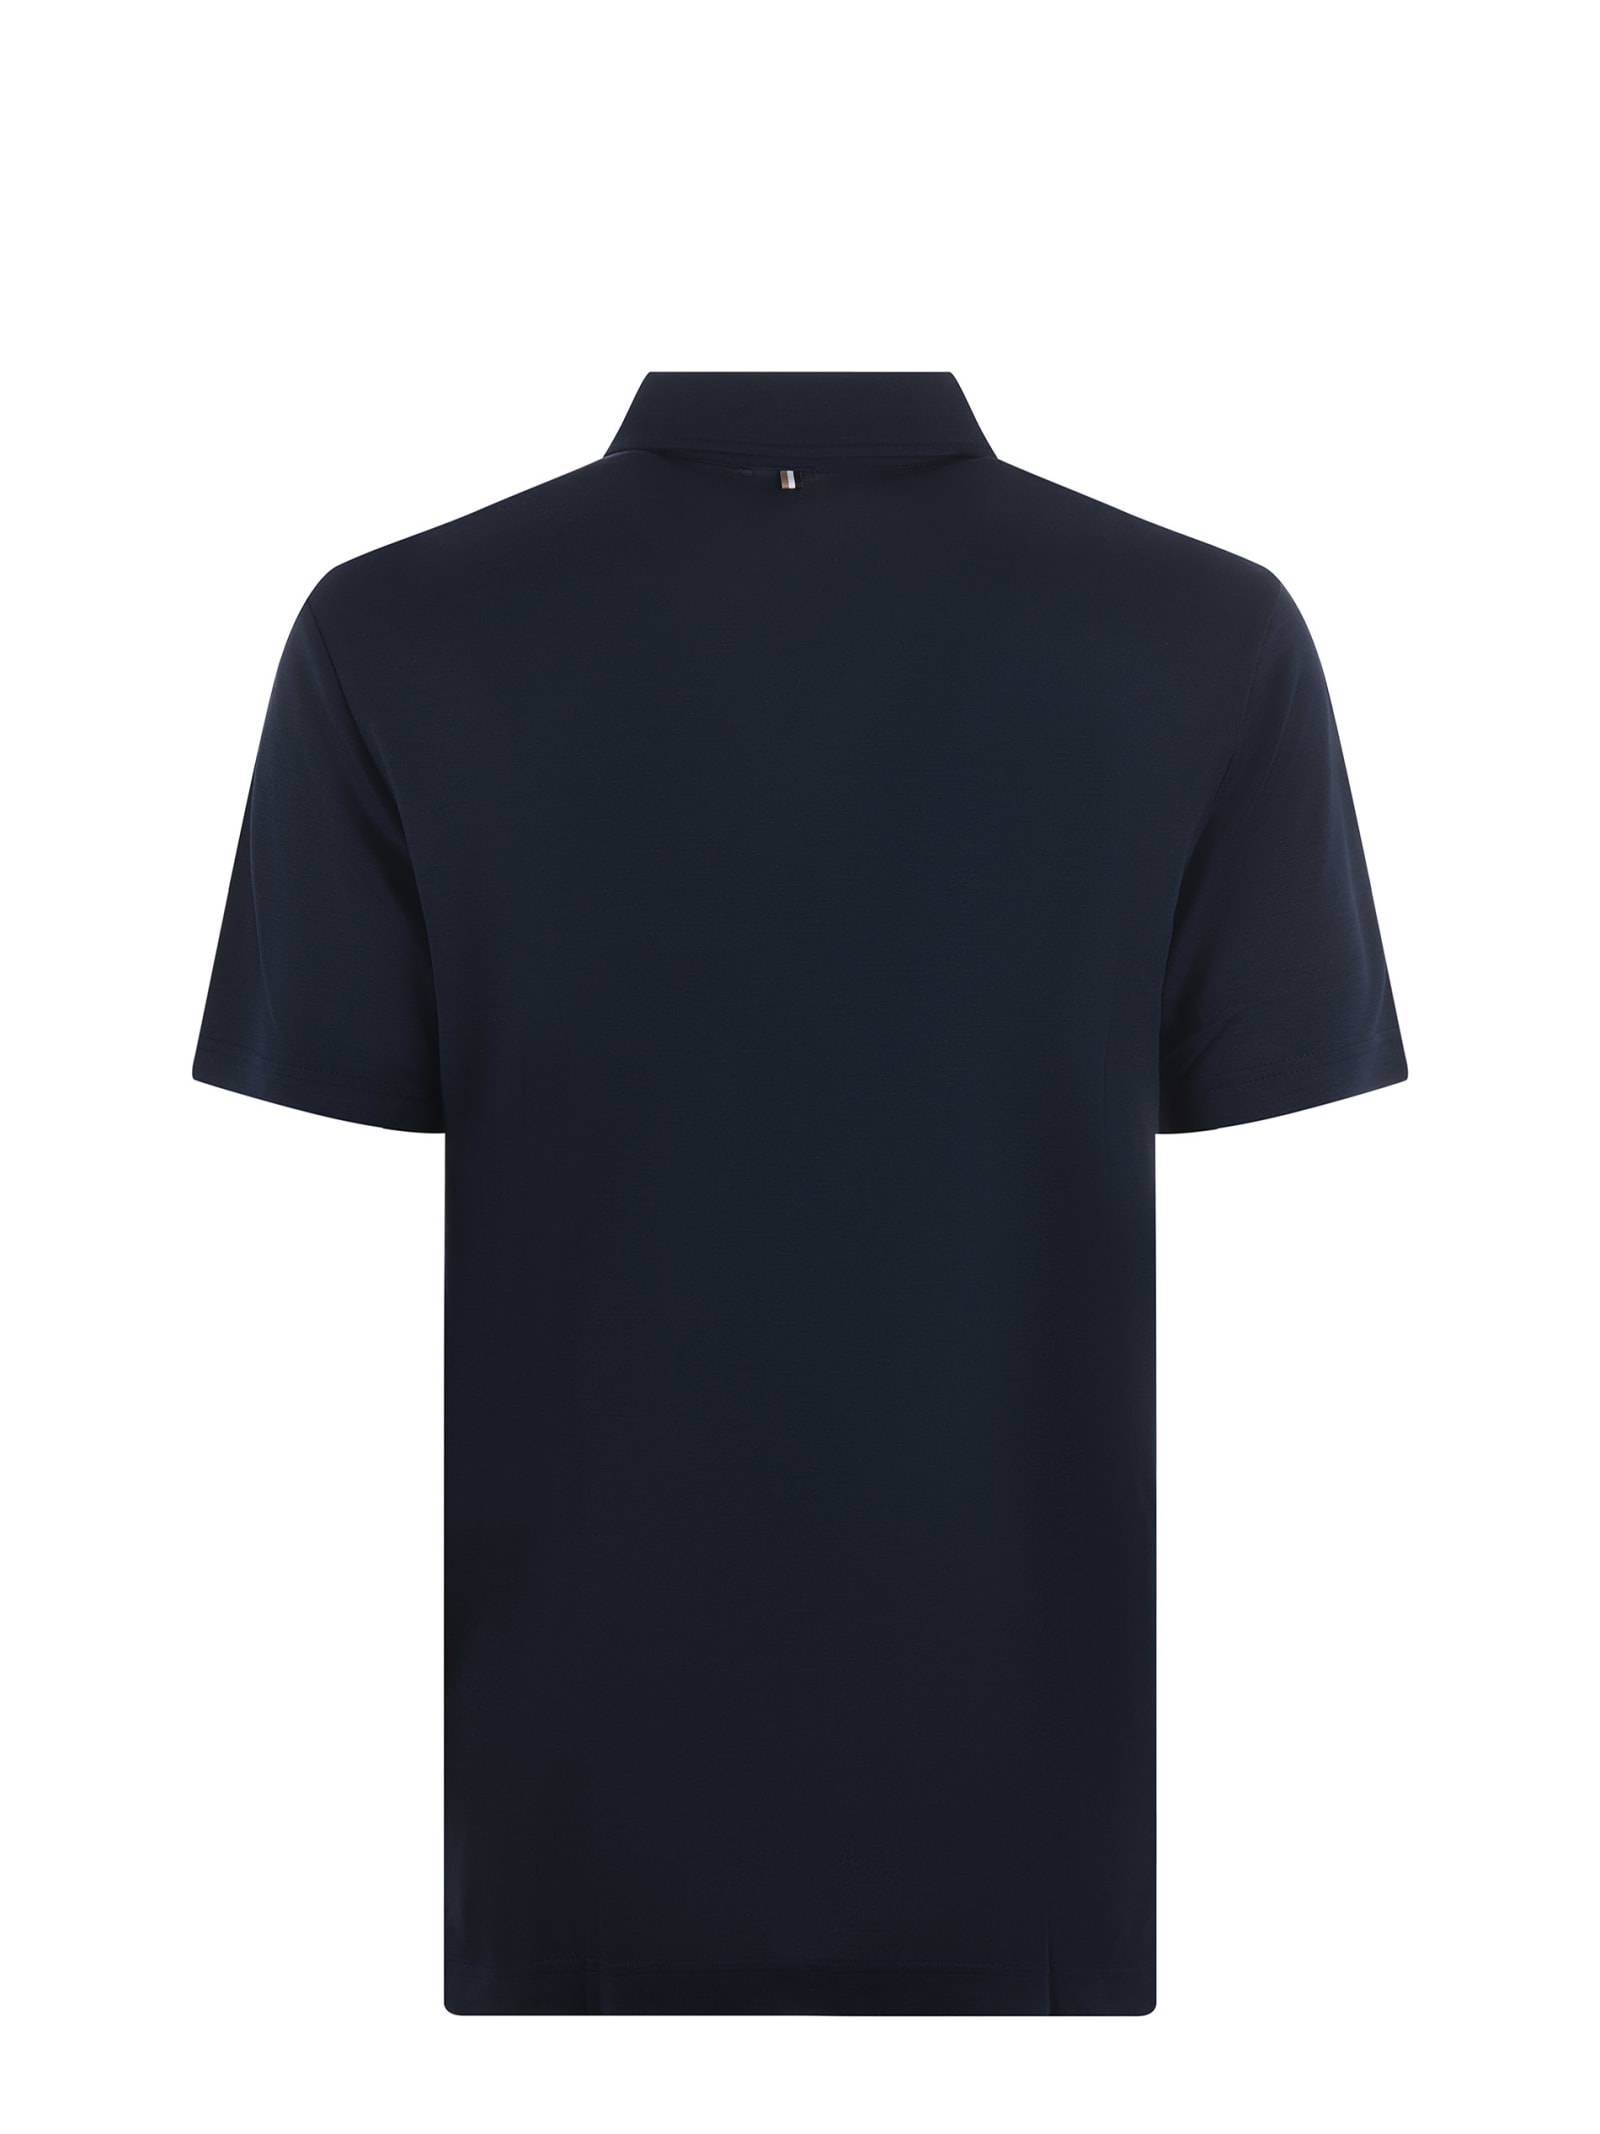 Shop Hugo Boss Boss Polo Shirt In Blu Scuro